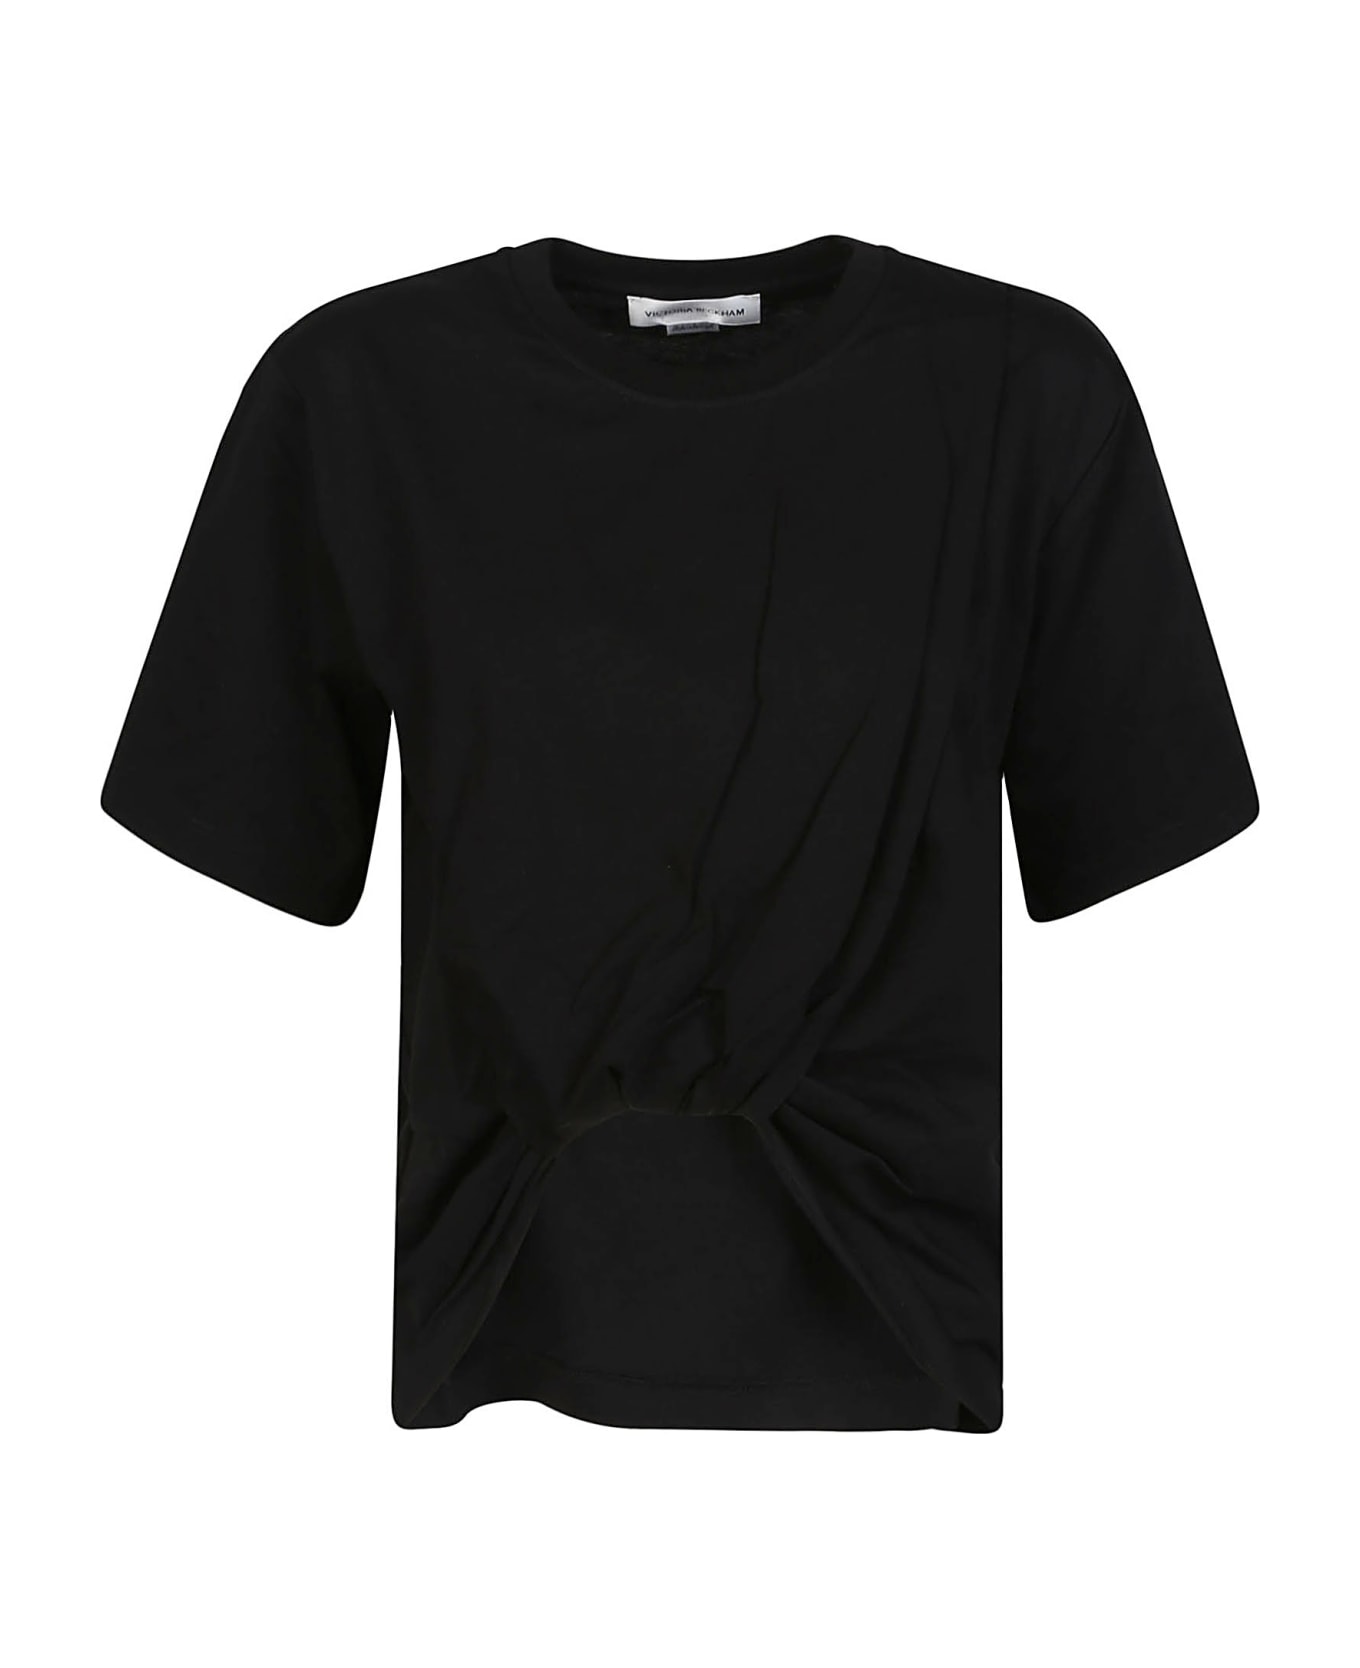 Victoria Beckham Twist Front T-shirt - Black Tシャツ